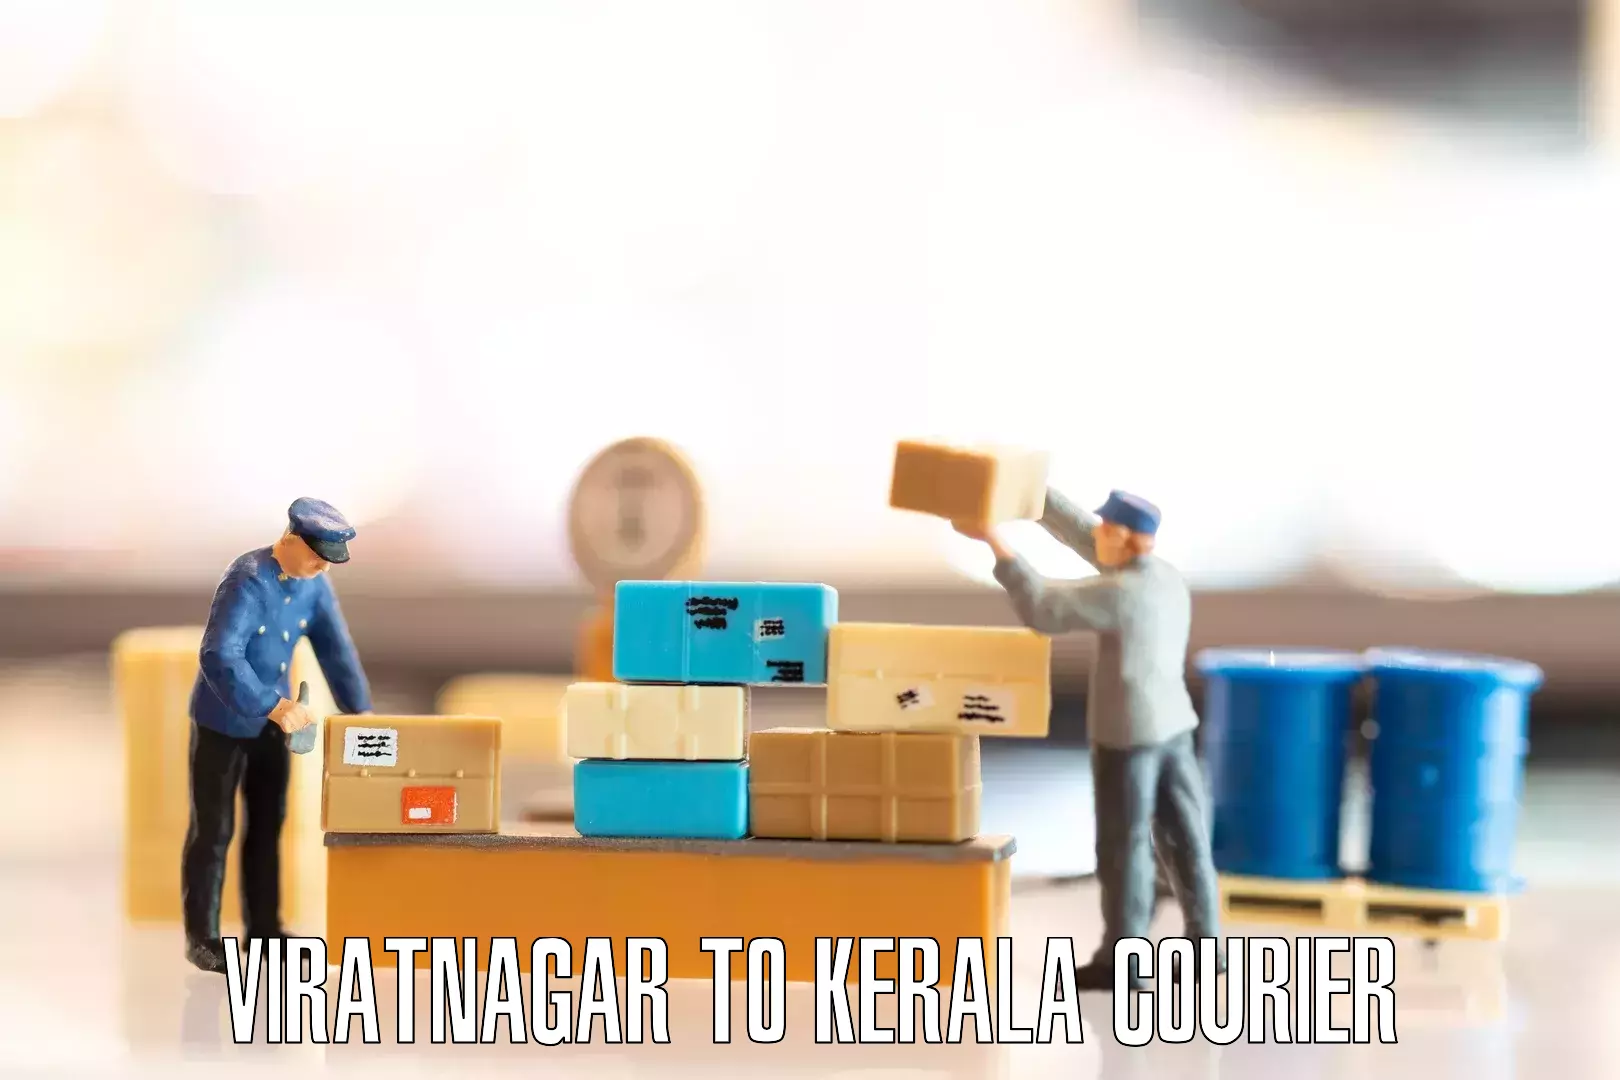 Skilled furniture transporters Viratnagar to Kerala